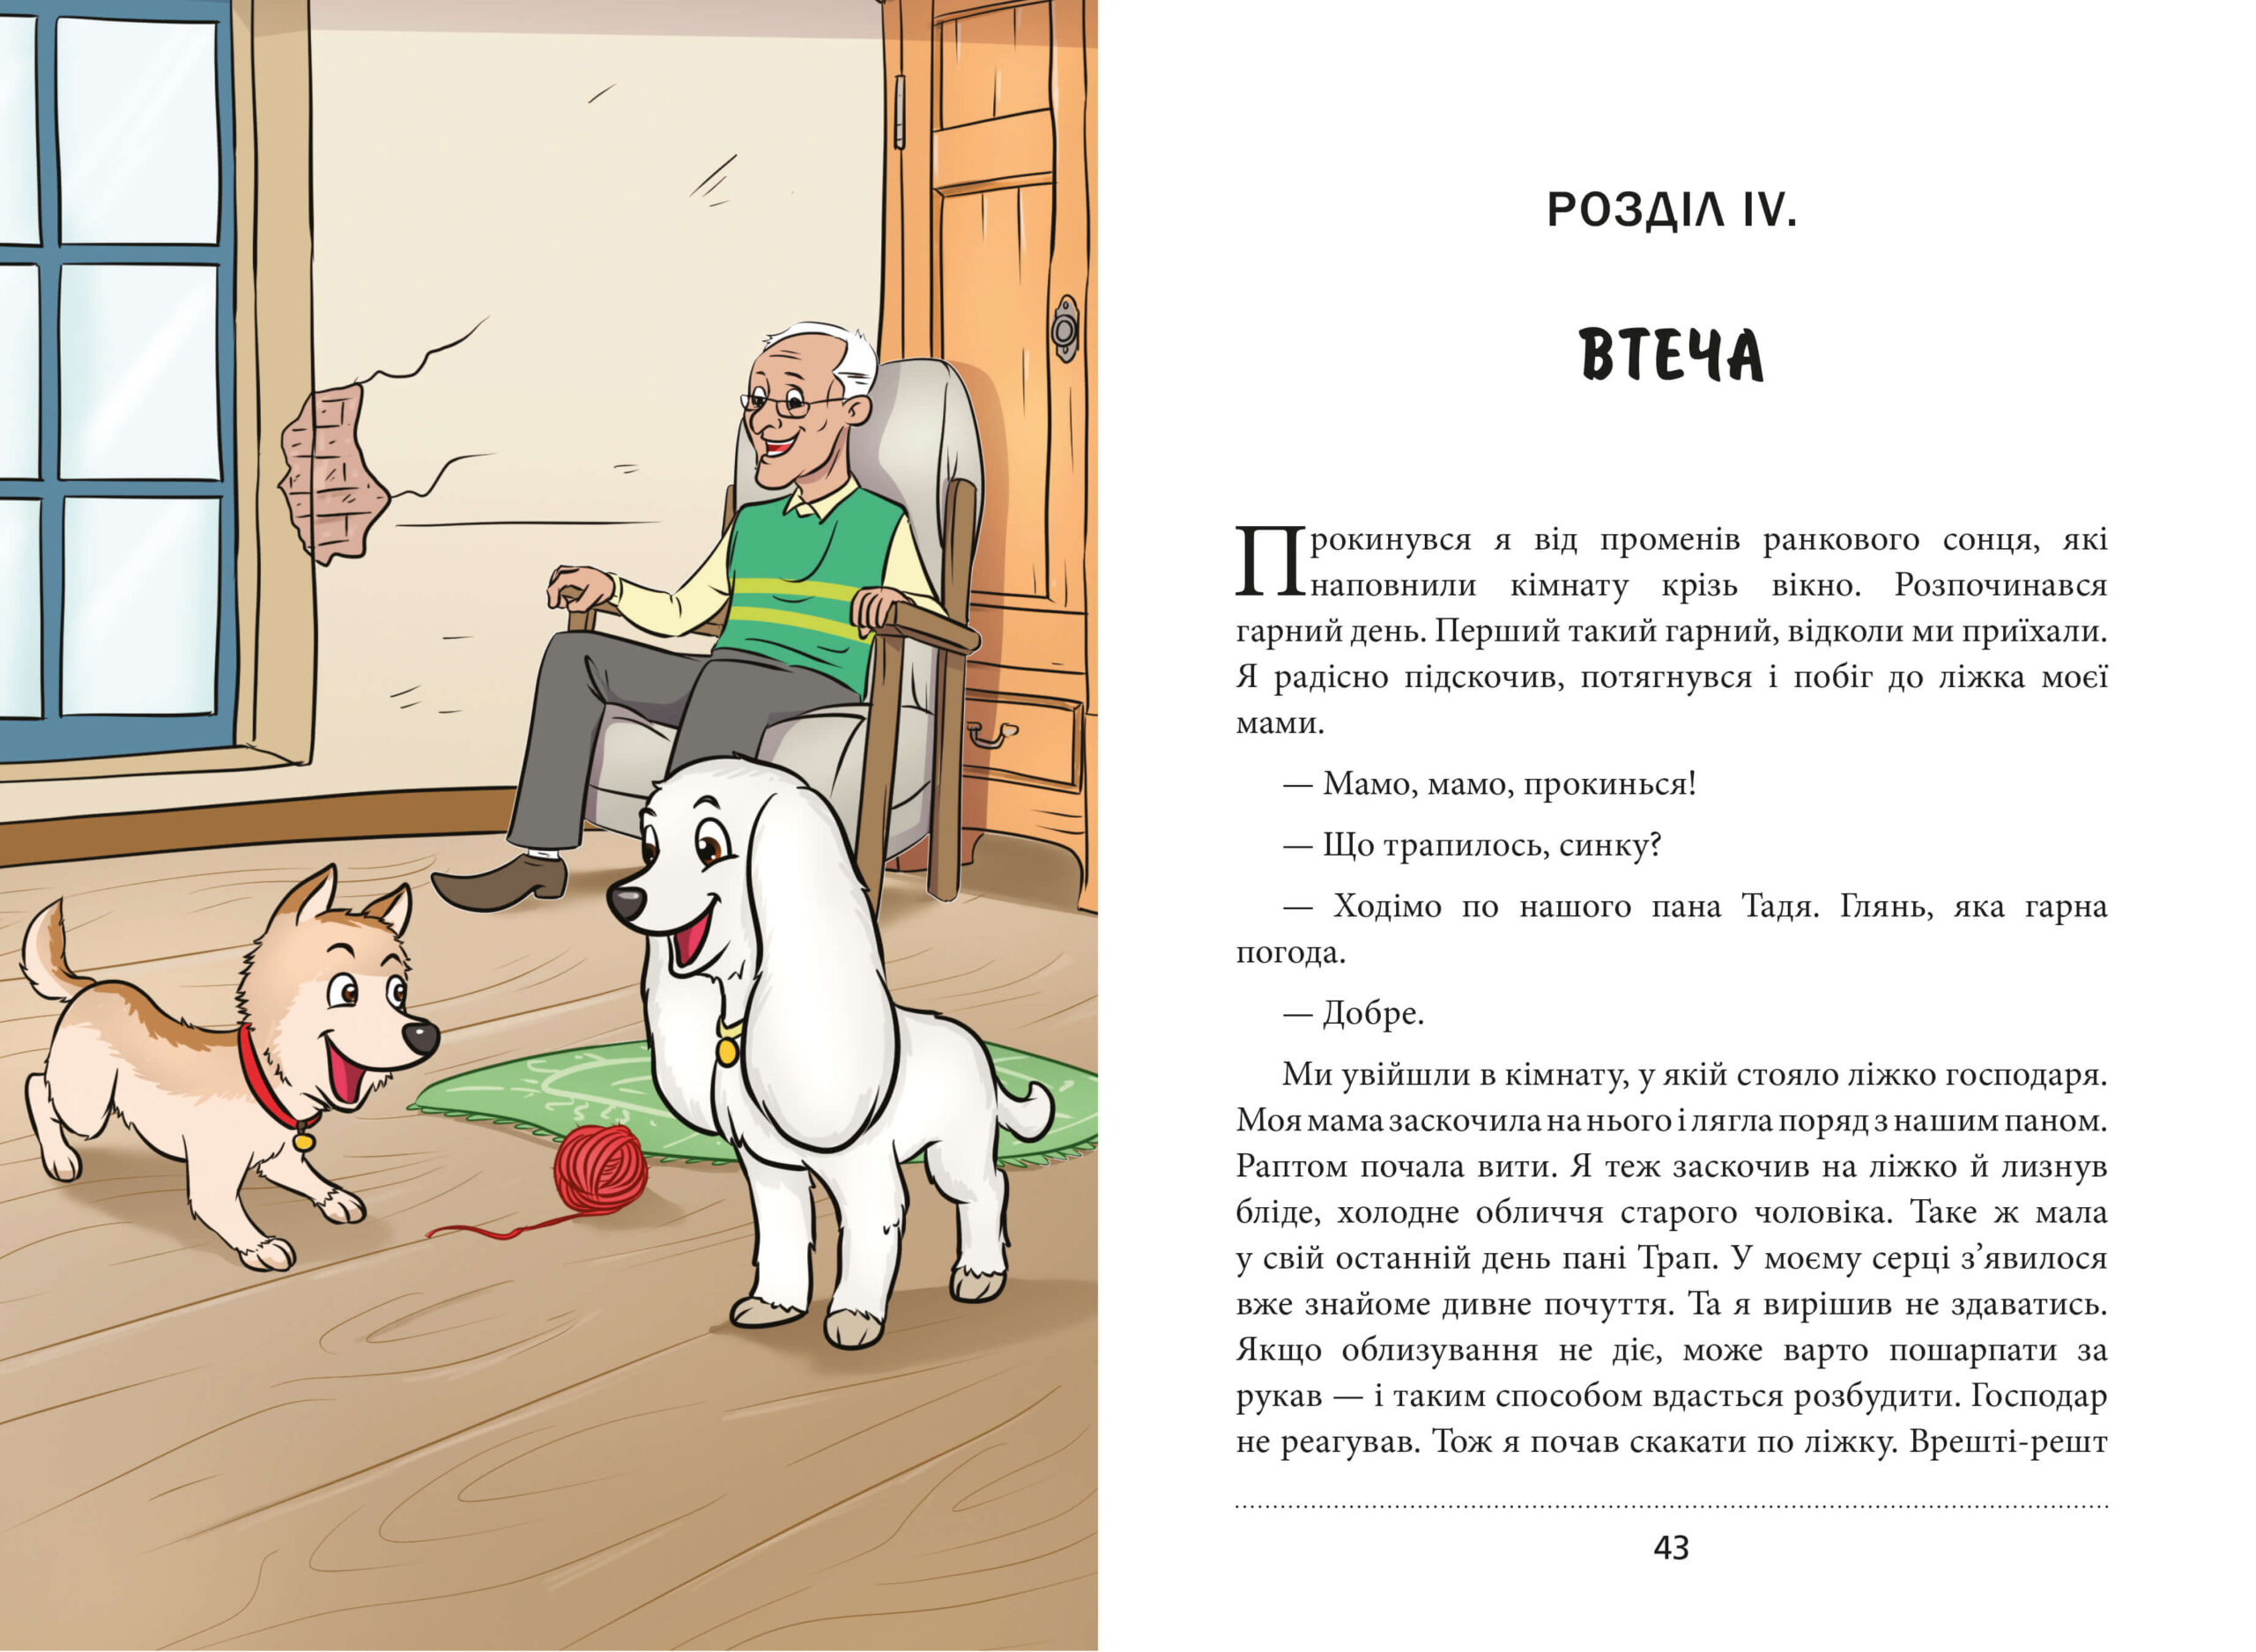 Hector-Print-UKRAINIAN-Book_ua_v-14